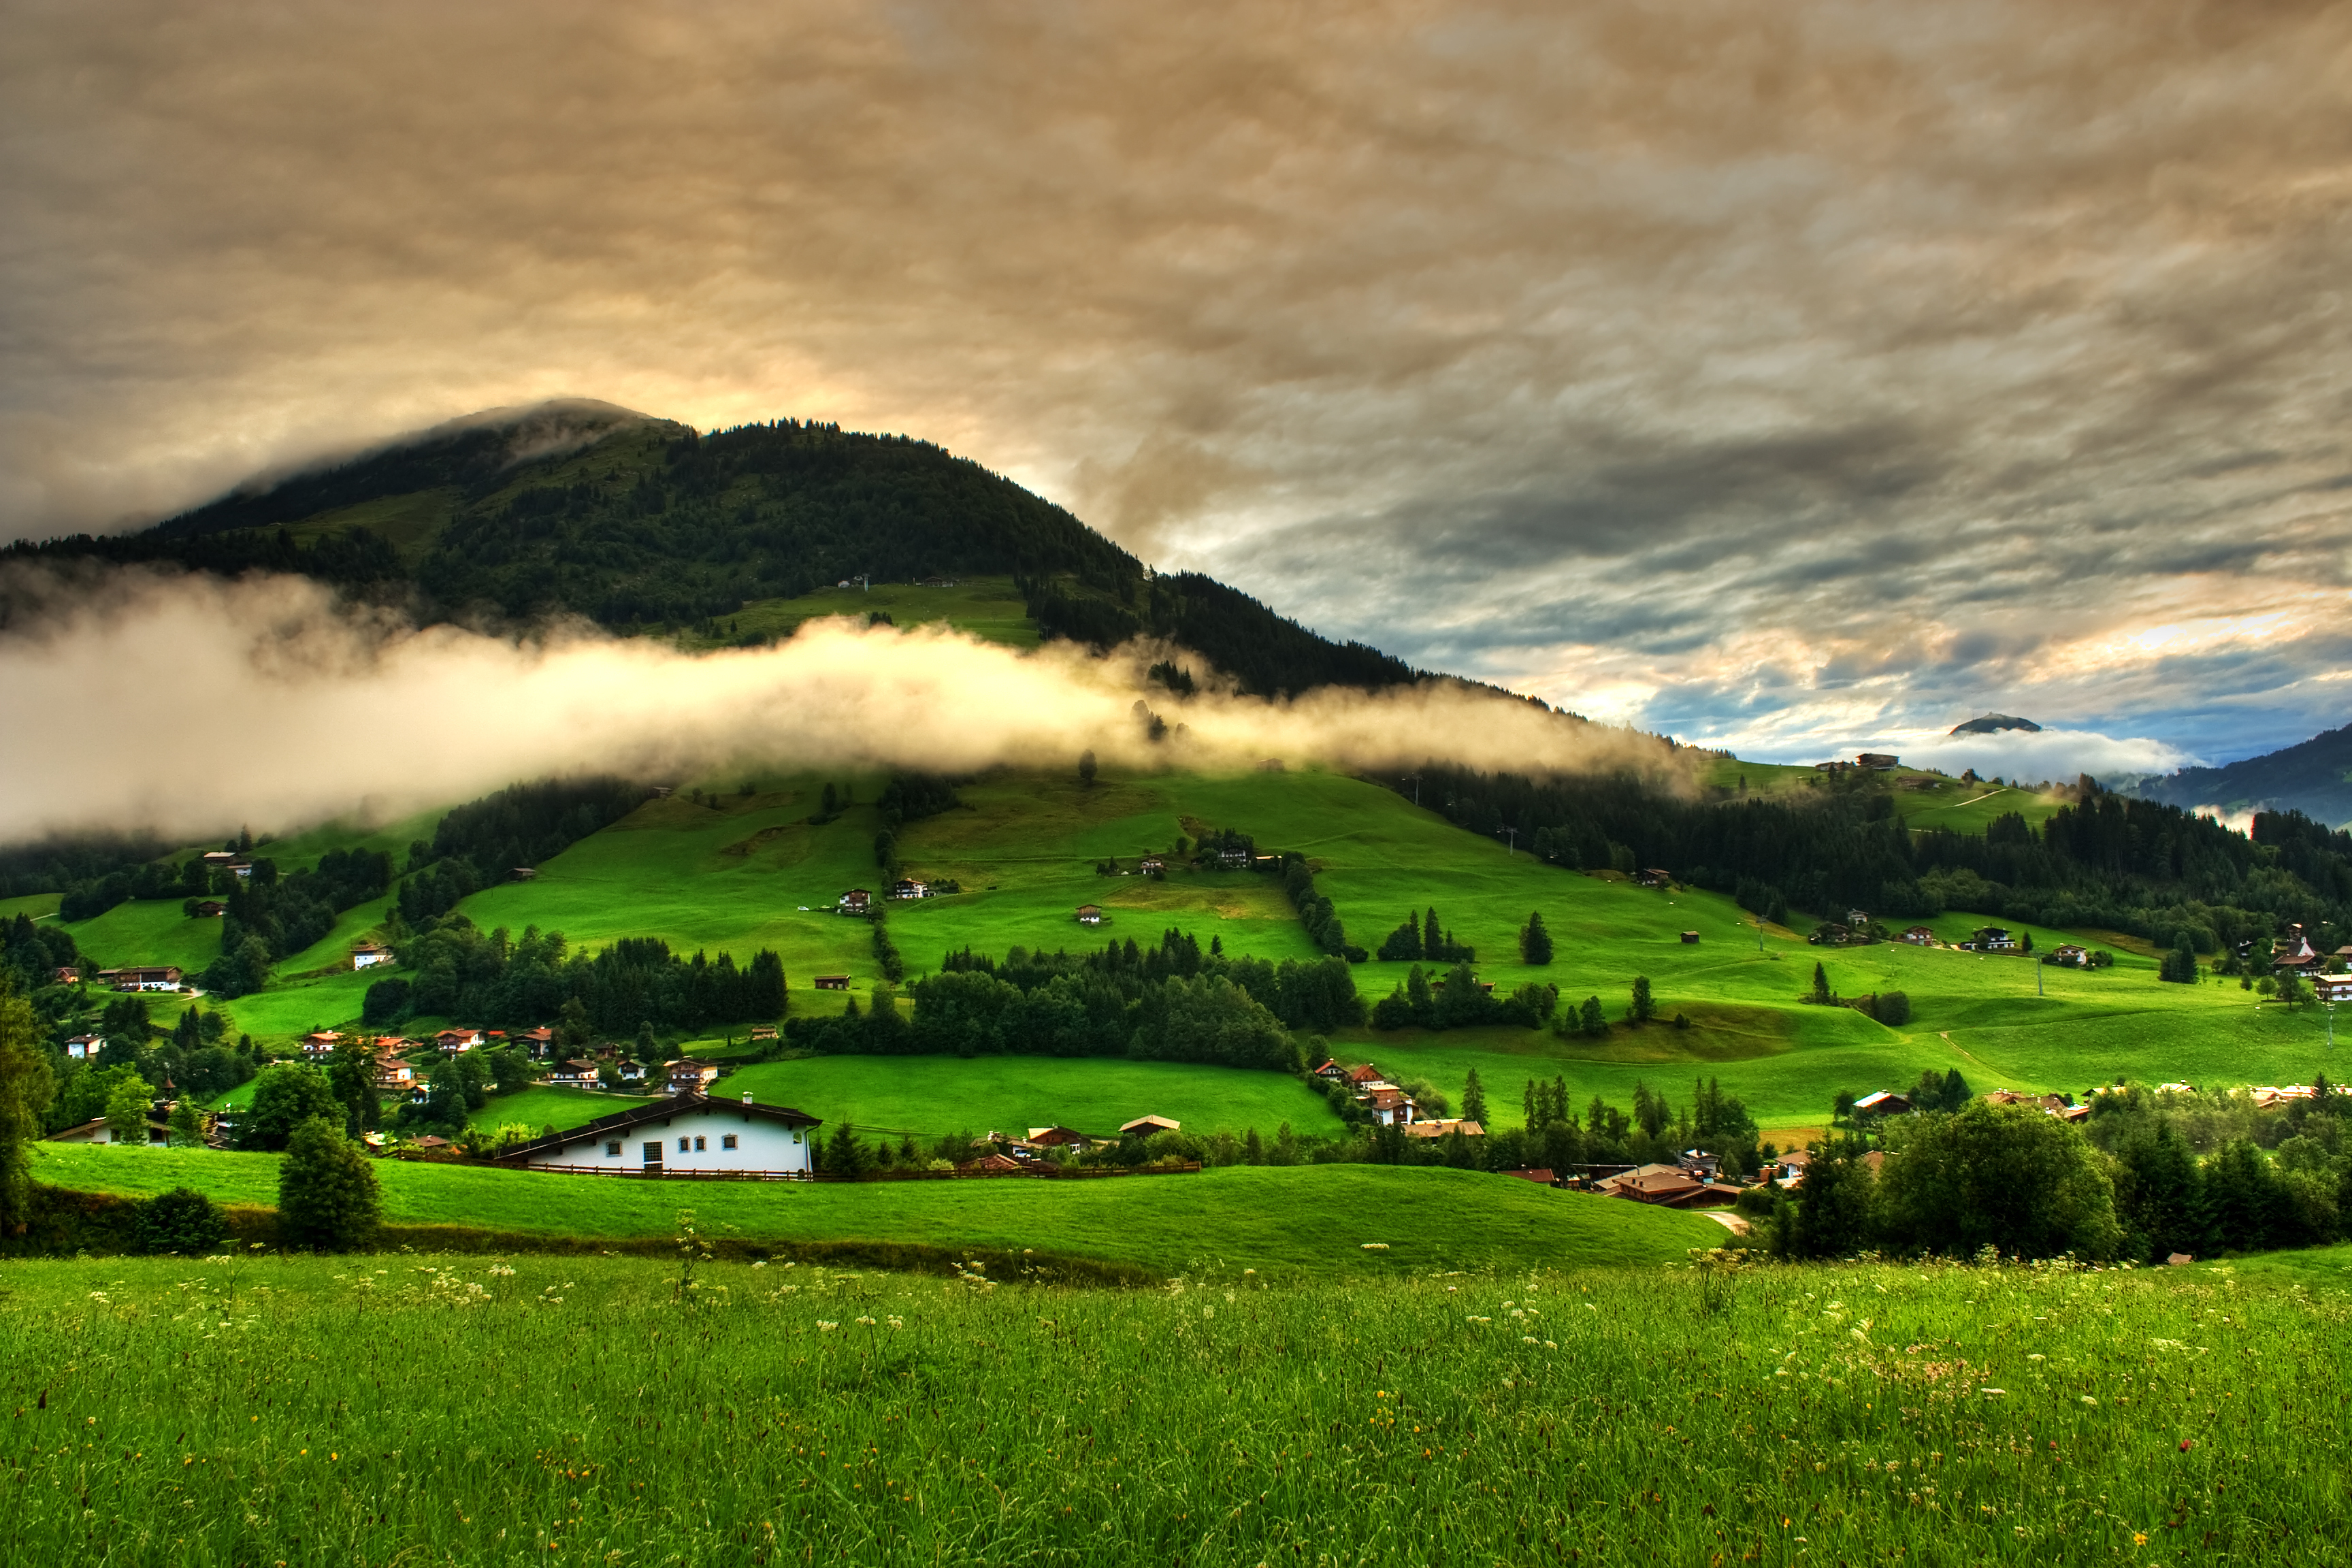 Обои 2560 1600. Зеленые холмы Швейцарии. Башкирия зеленые холмы. Зеленые холмы Ирландии. Пейзажи природы.